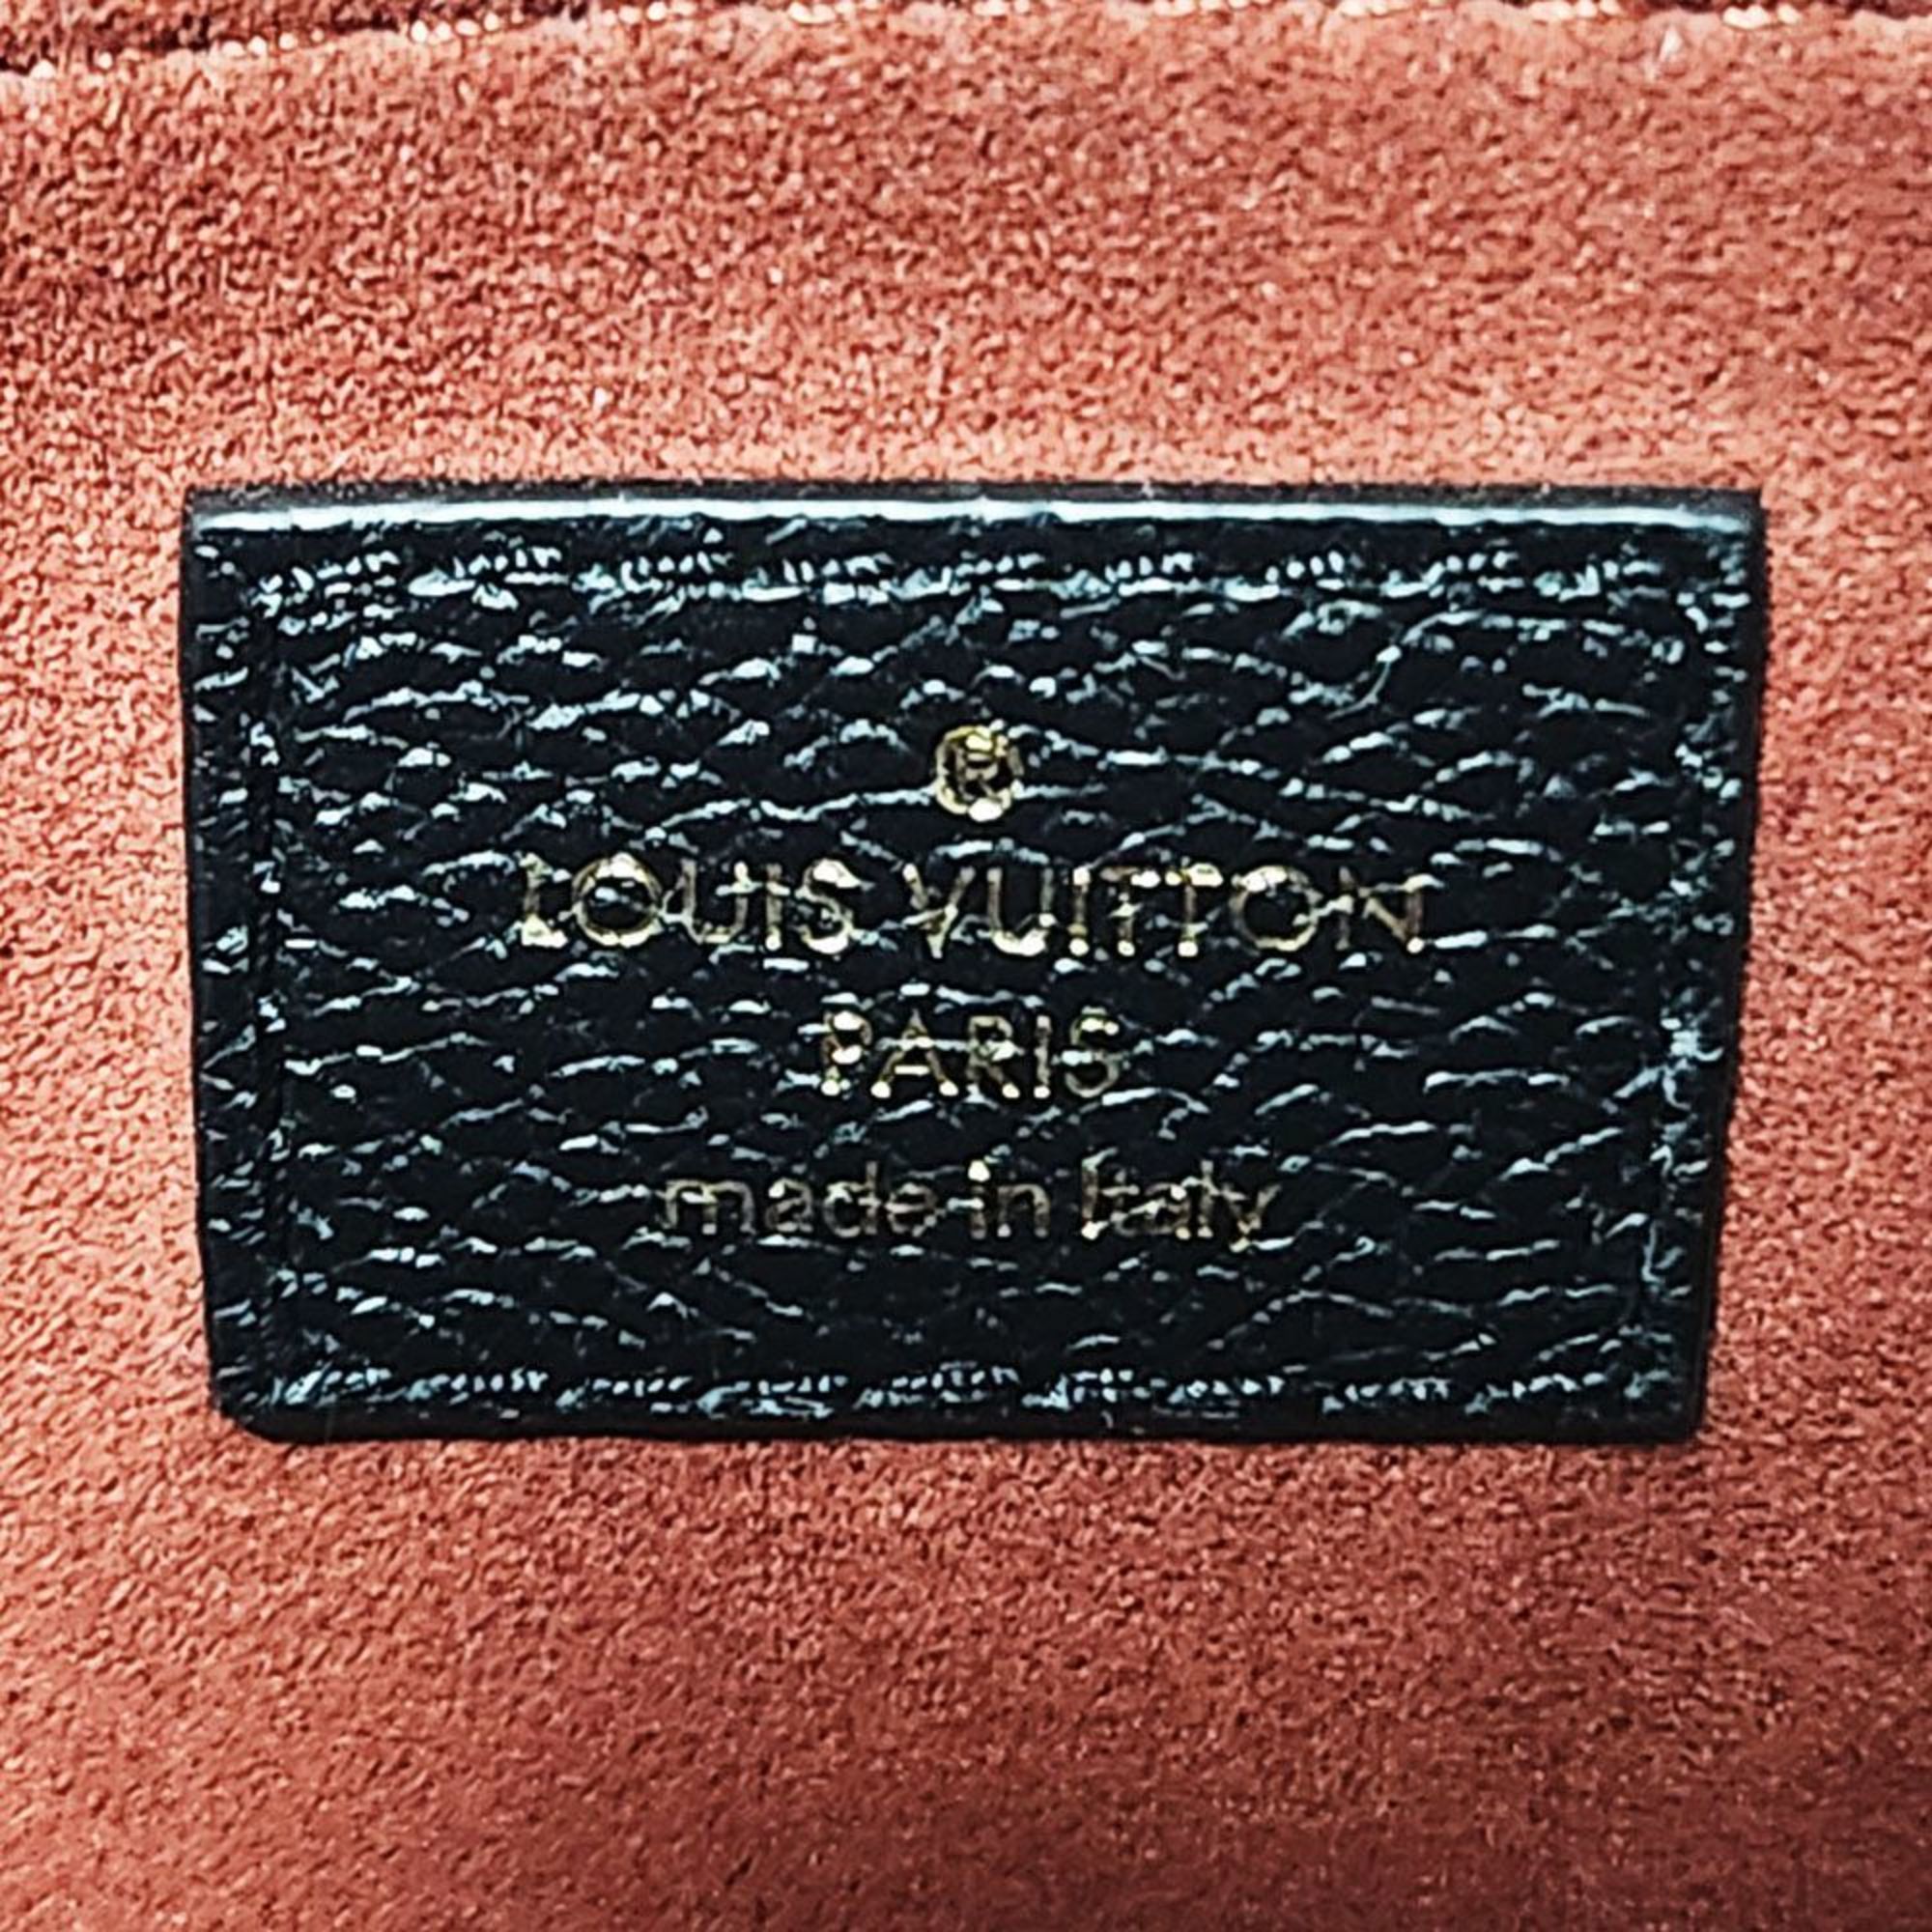 Louis Vuitton LOUISVUITTON Monogram Empreinte On the Go PM M45659 Tote Bag Bicolor Black Beige Women's Leather Handbag Back